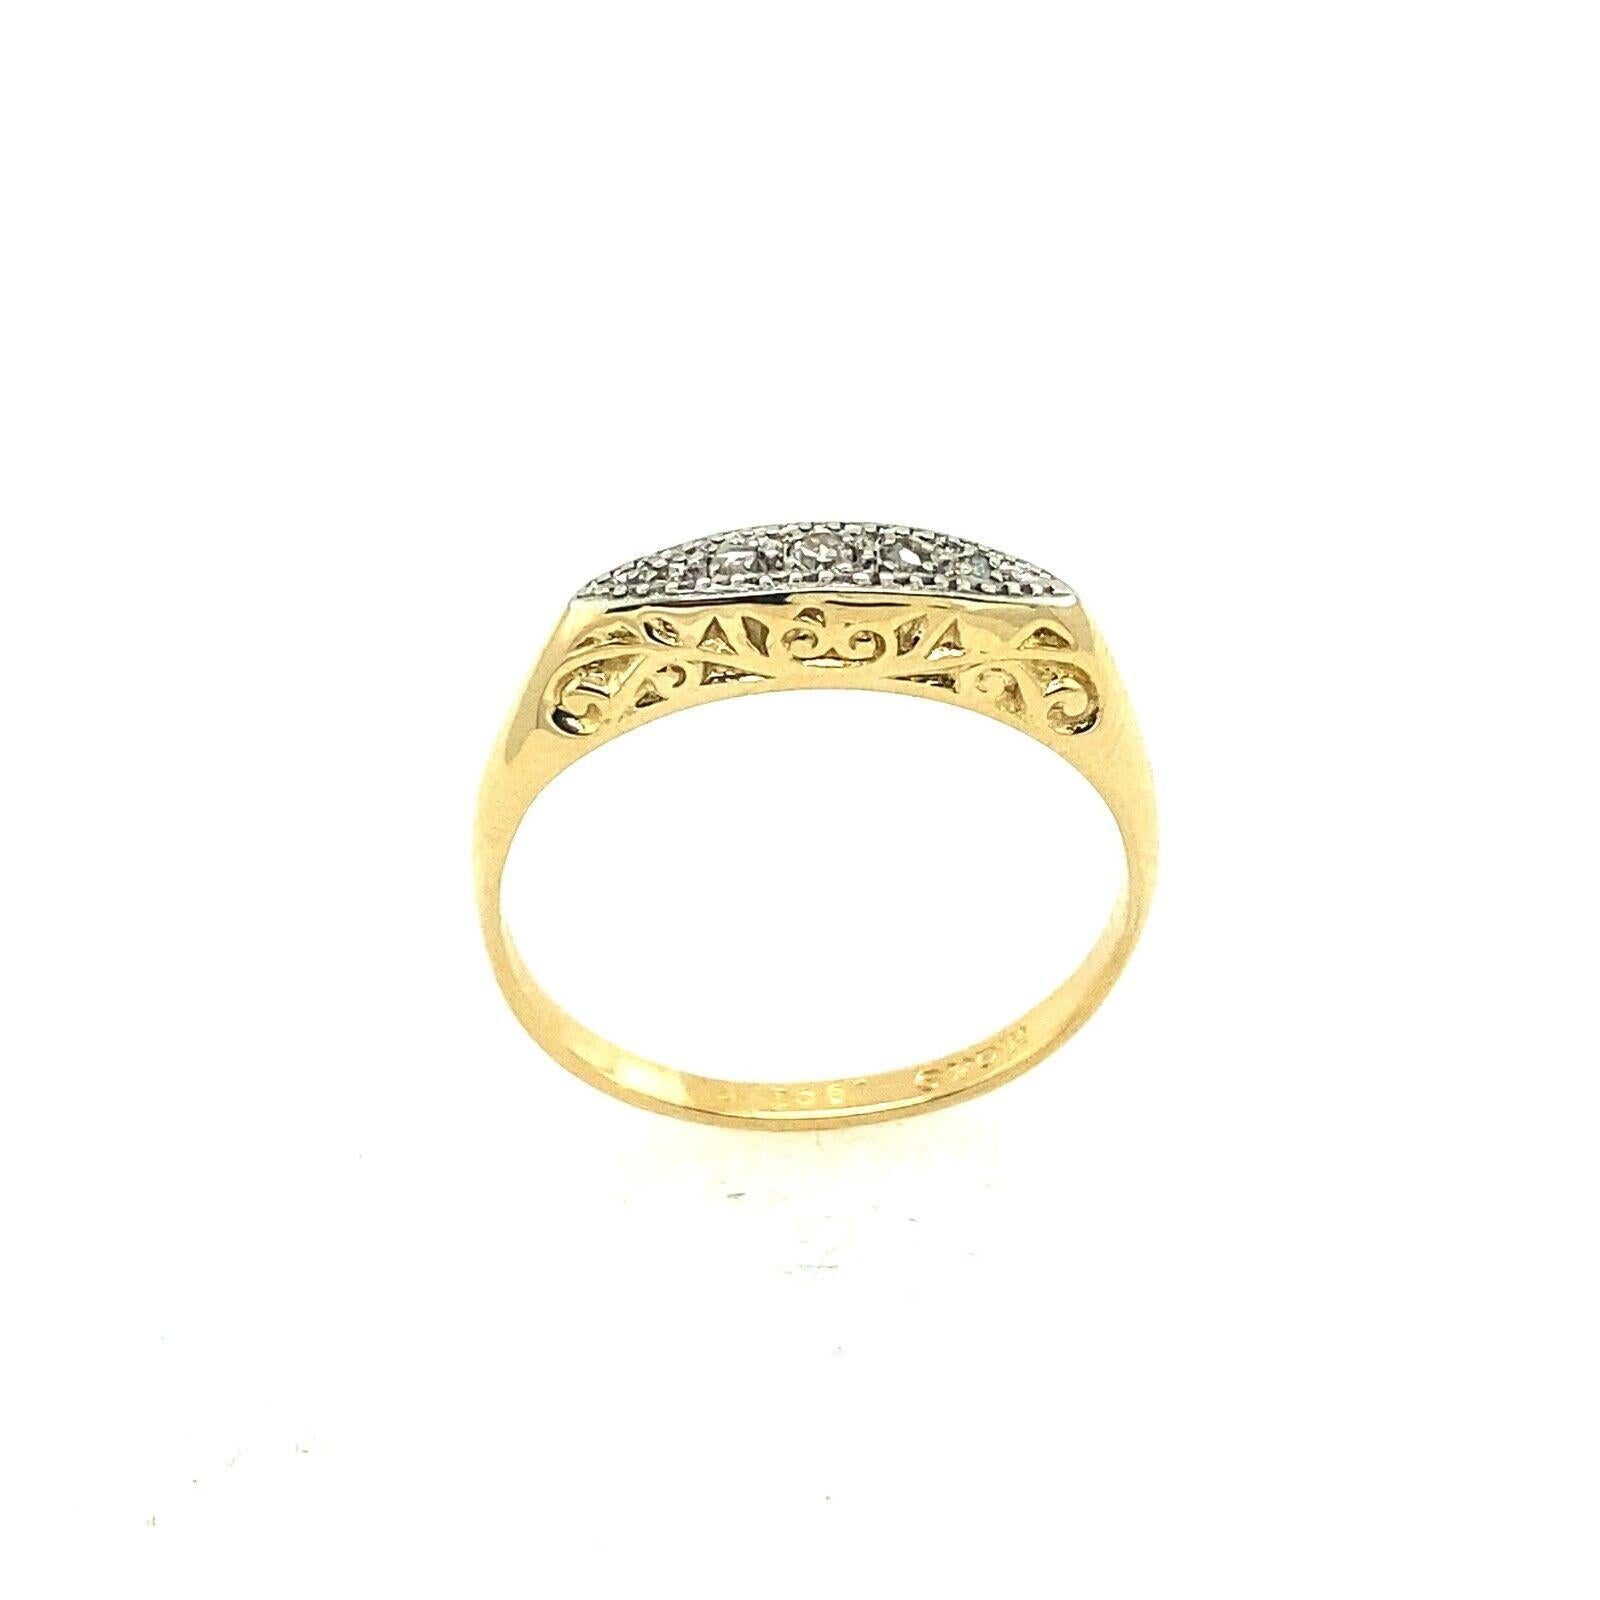 Dieser schöne Diamantring im antiken Stil aus 18 Karat Gelb und Platin ist perfekt für jeden Anlass. Der Ring hat insgesamt 0,05ct Diamanten im Altschliff und ist mit handgravierten Kanten versehen.

Zusätzliche Informationen:
Gesamtgewicht der